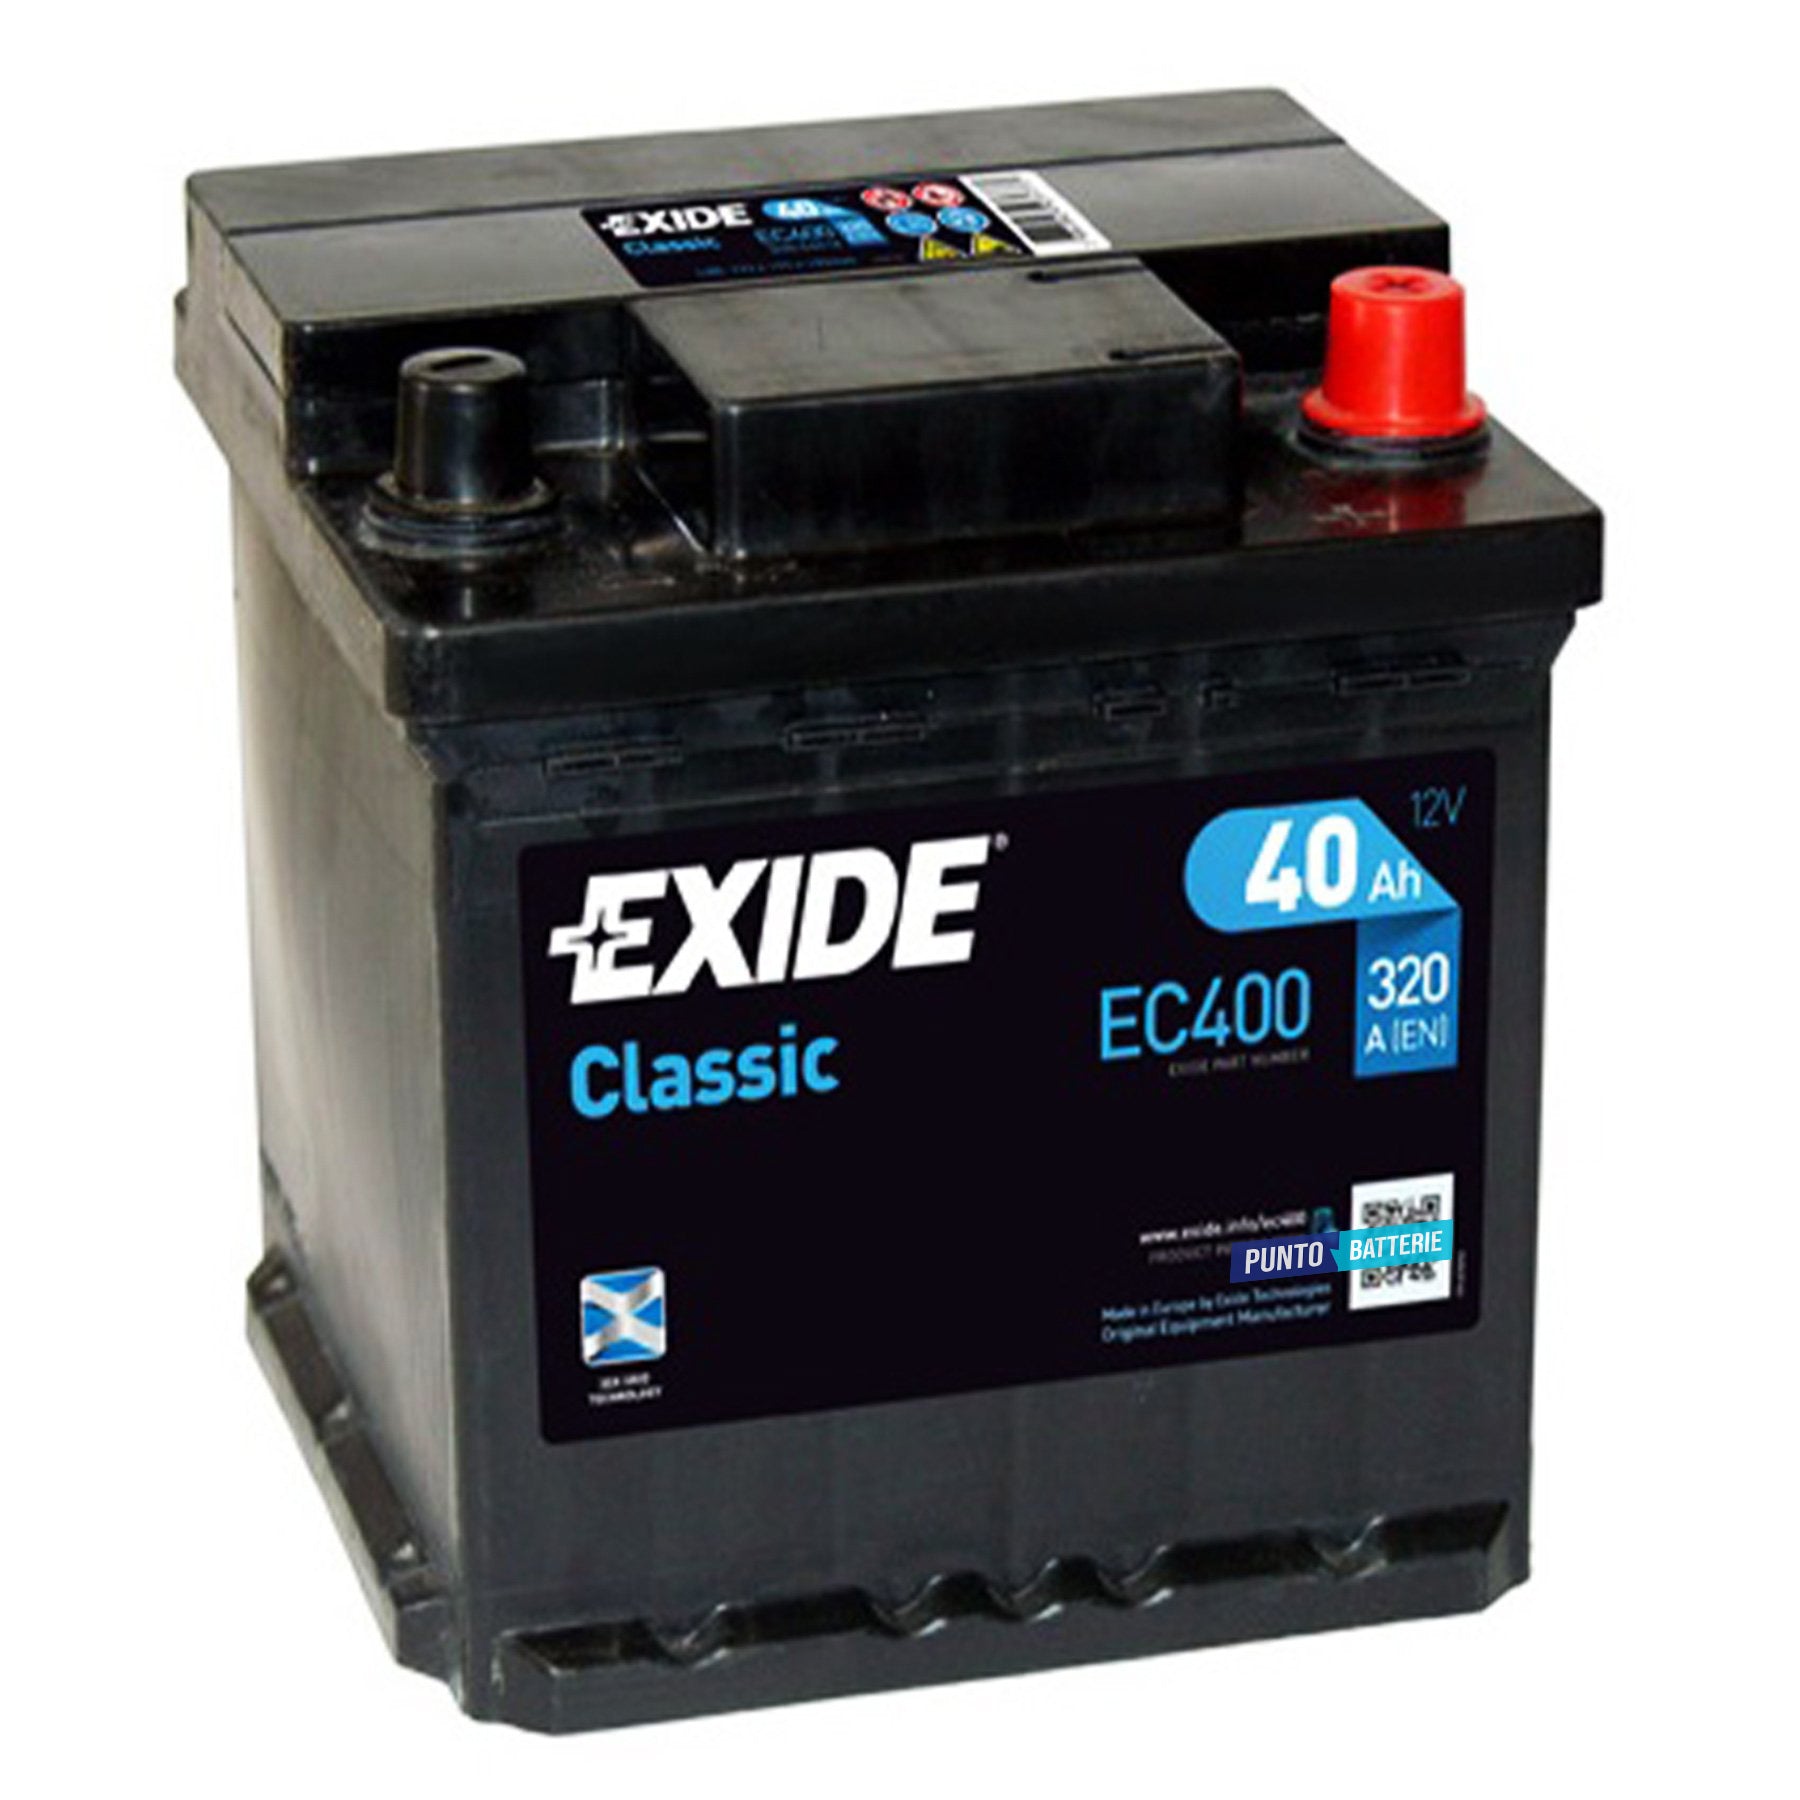 Batteria originale Exide Classic EC400, dimensioni 175 x 175 x 190, polo positivo a destra, 12 volt, 40 amperora, 320 ampere. Batteria per auto e veicoli leggeri.